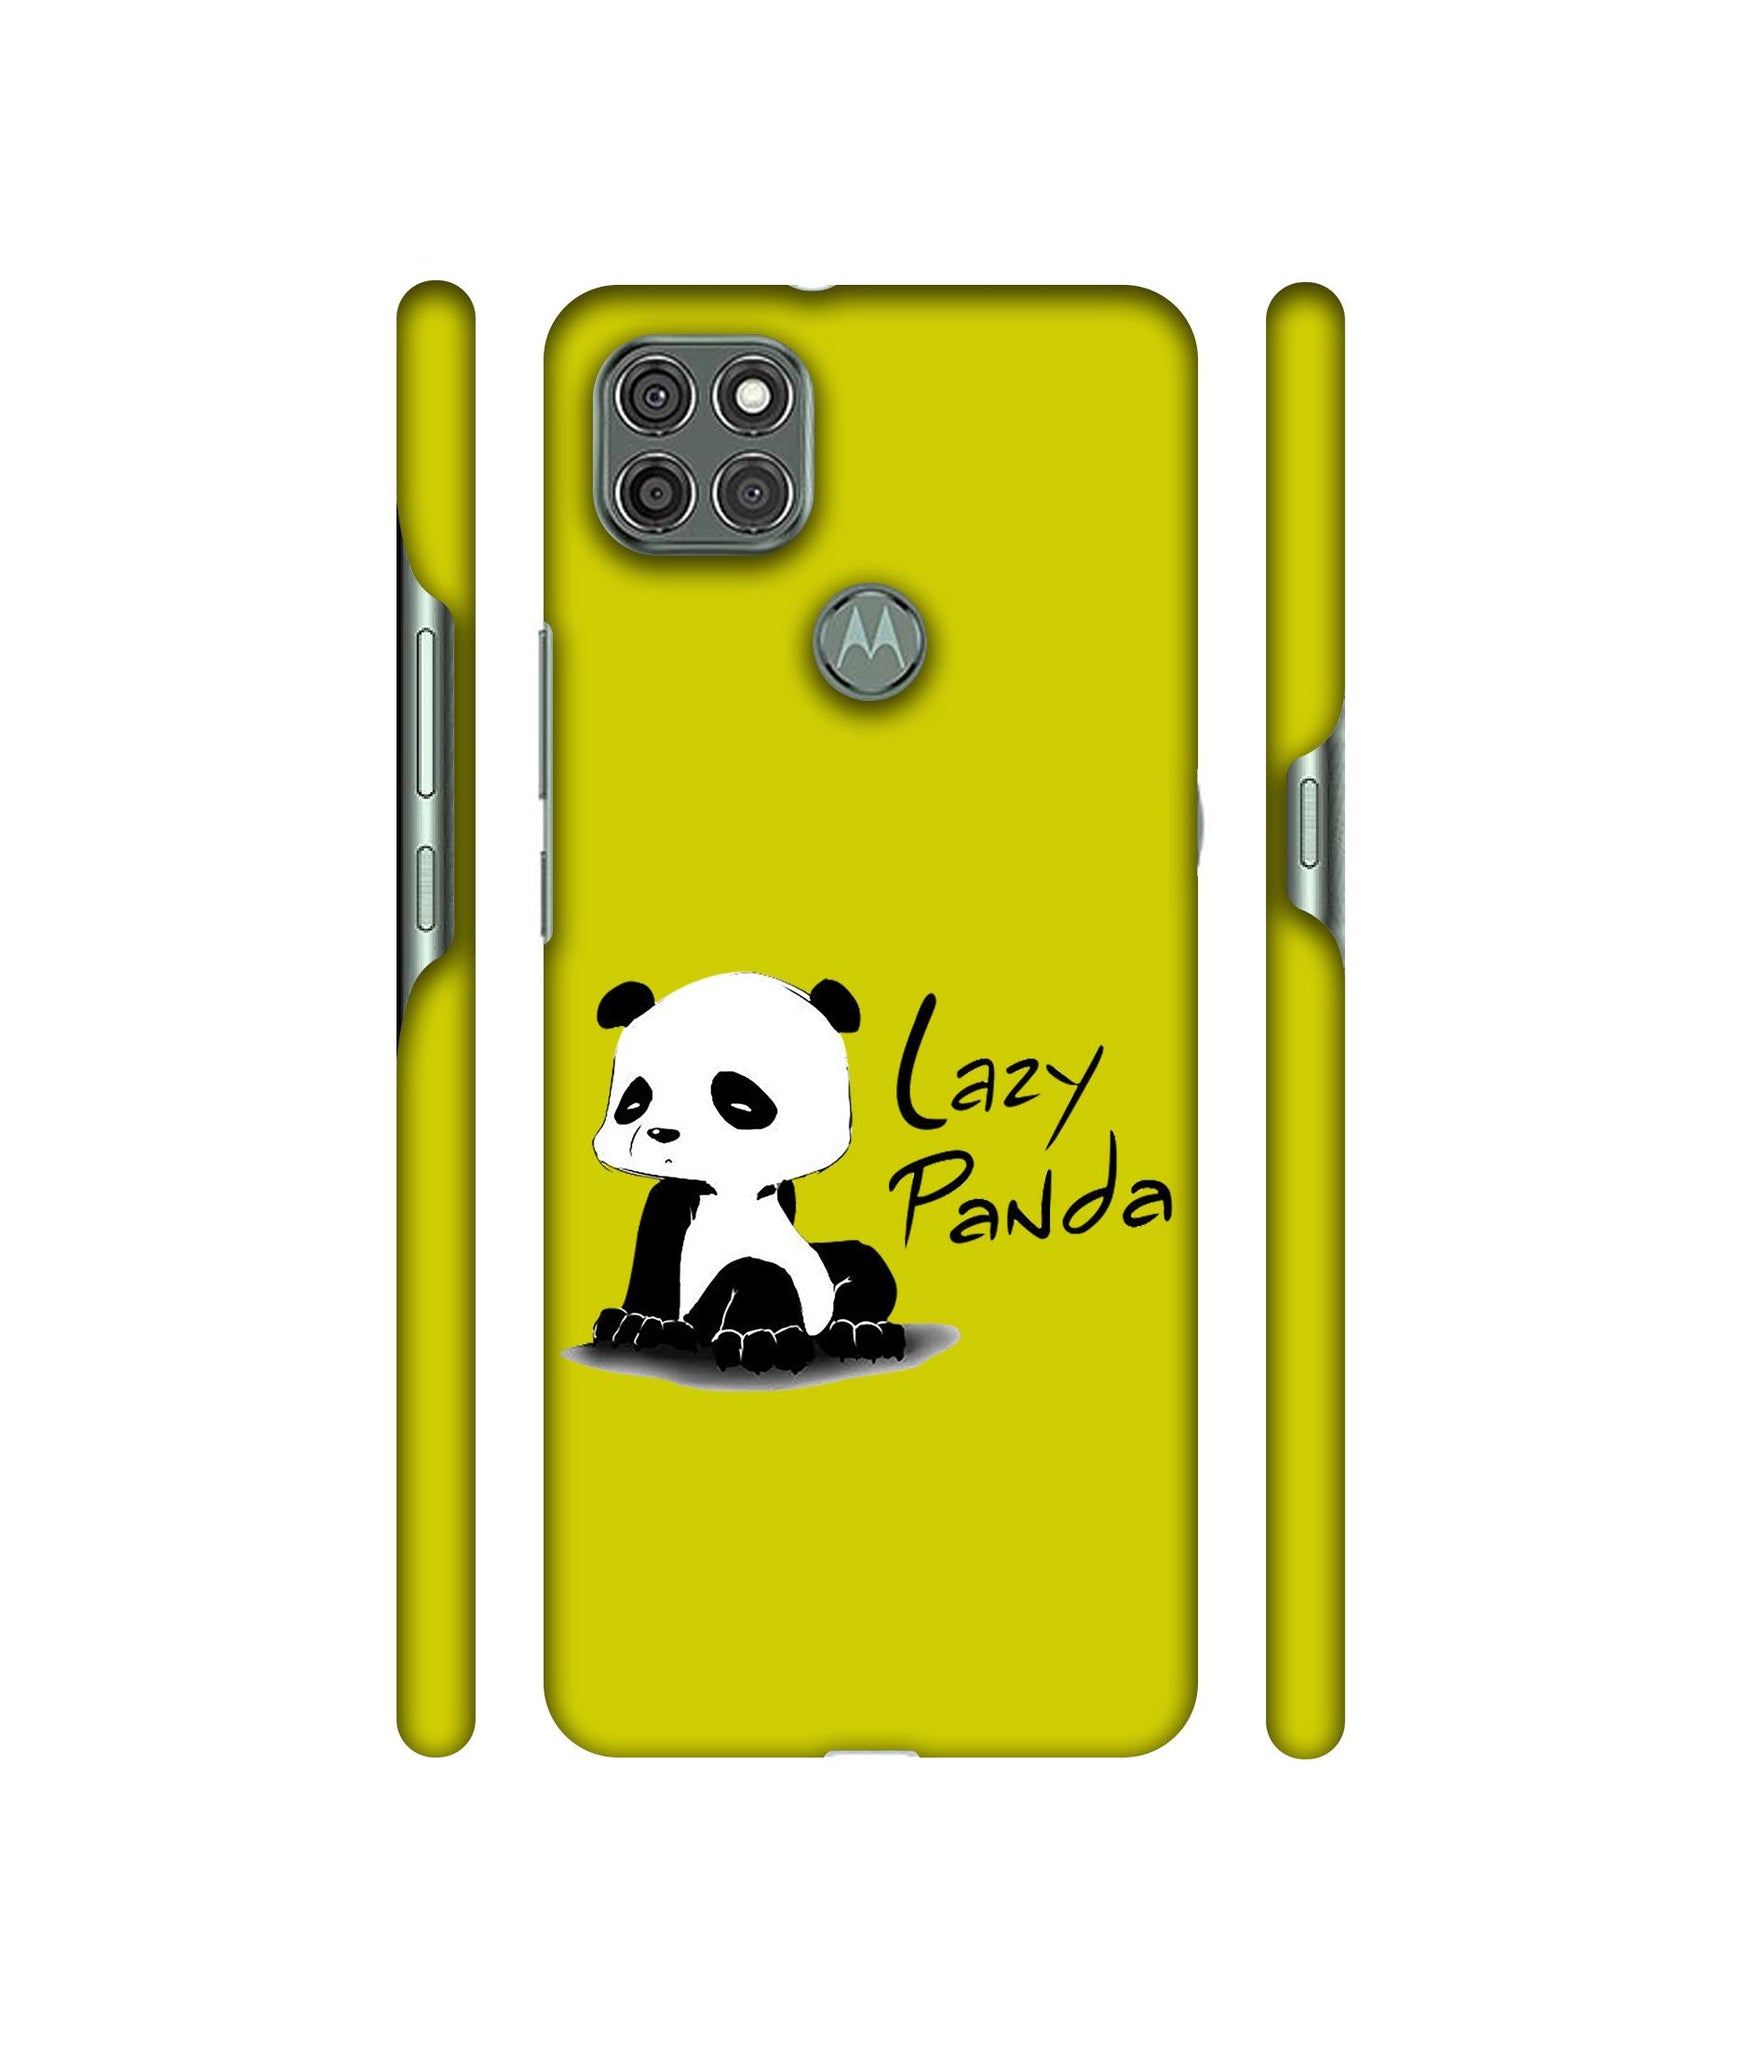 Lazy Panda Designer Hard Back Cover for Motorola Moto G9 Power